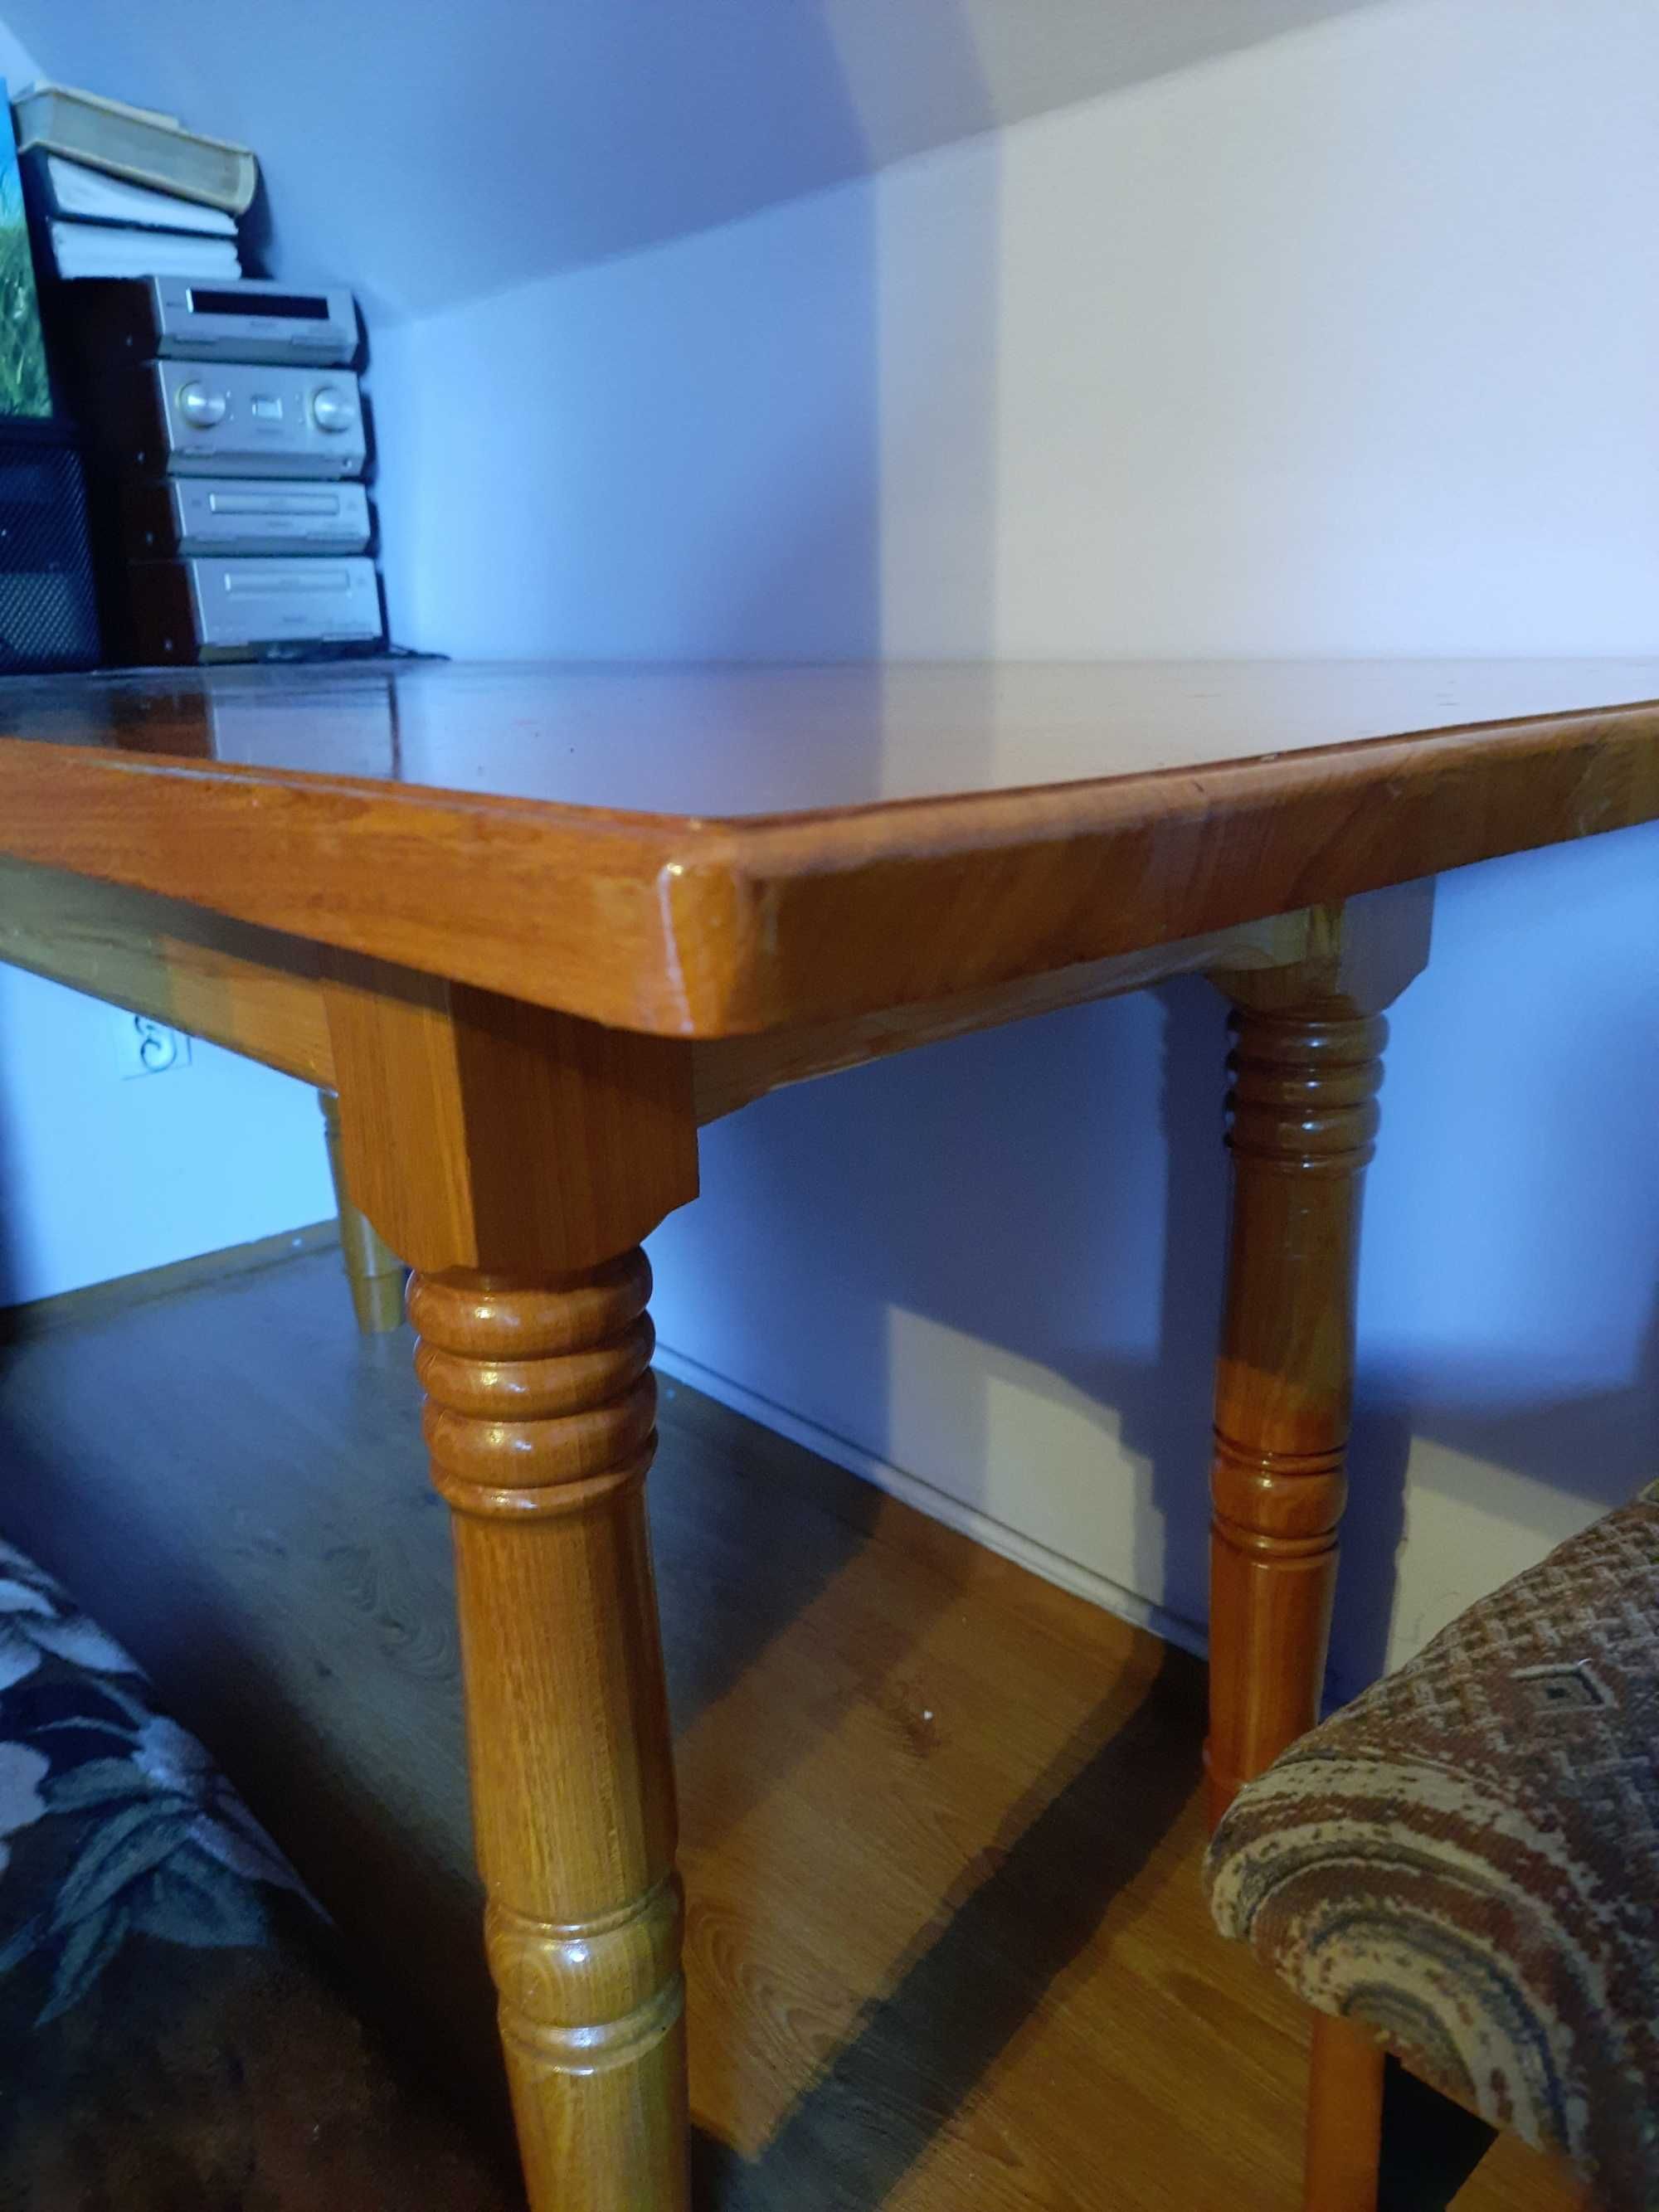 Stół drewniany stan idealny